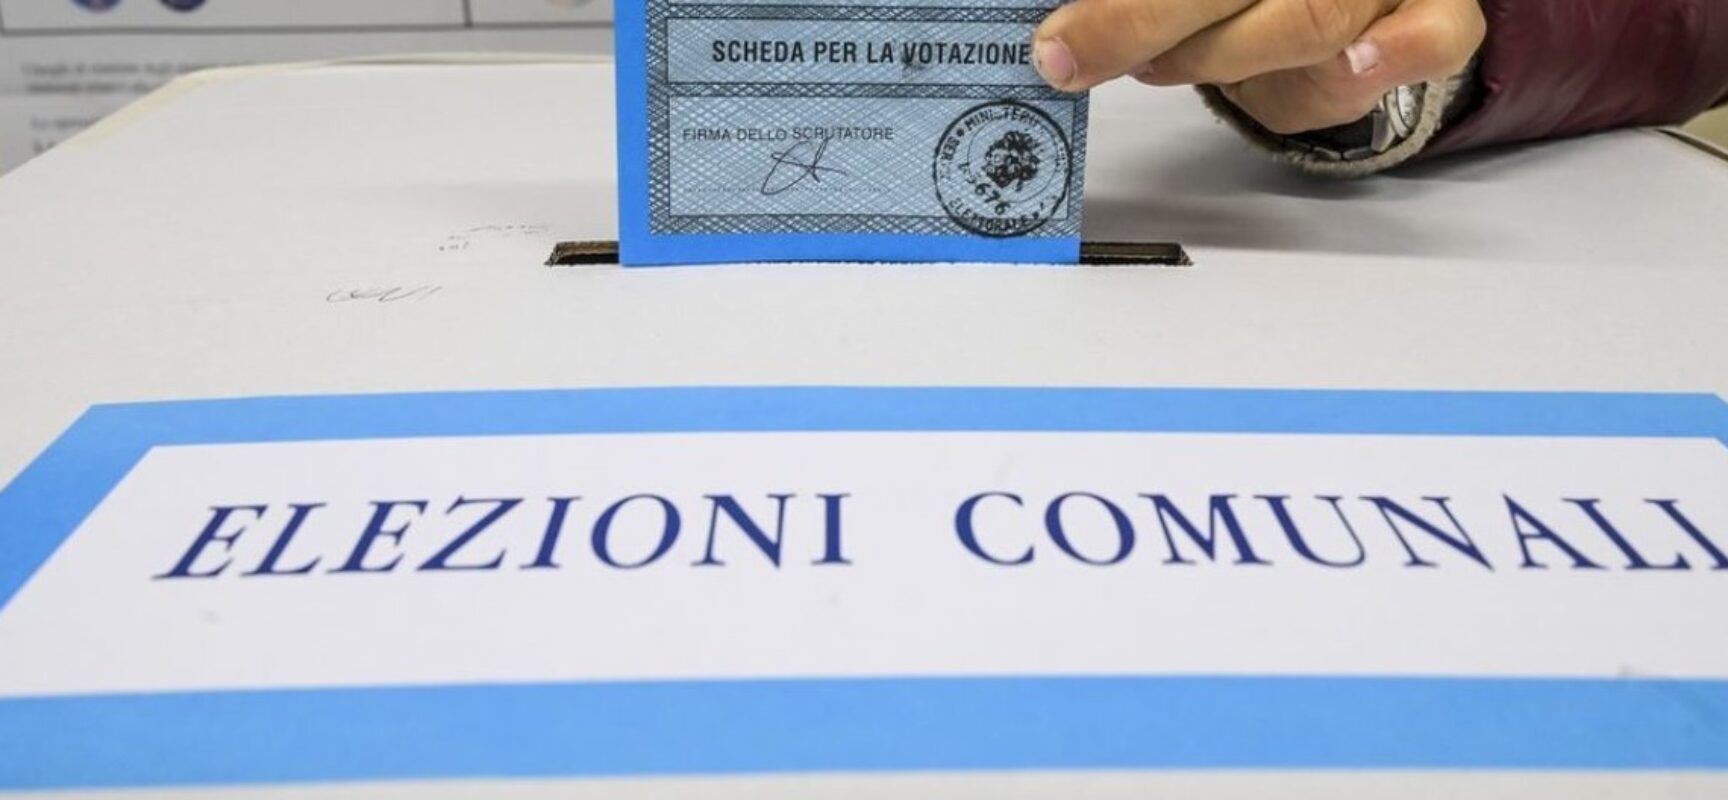 Tar Puglia respinge ricorso elettorale, confermata legittimità elezioni comunali 2023